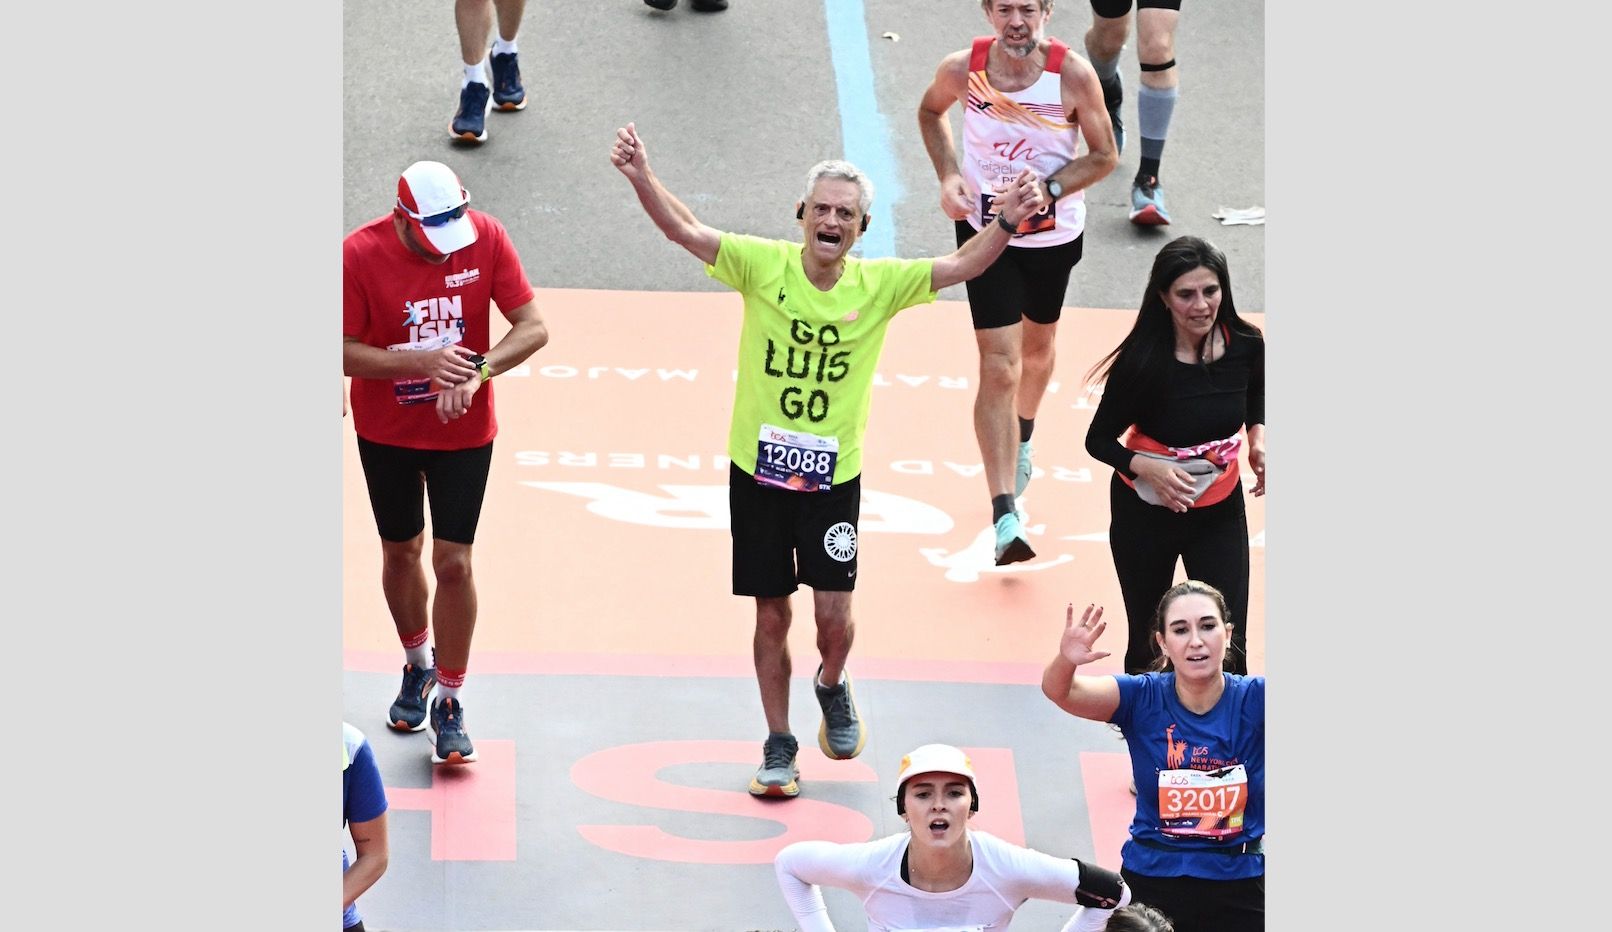 El psiquiatra Luis Rojas-Marcos completa la maratón de Nueva York a los 80 años